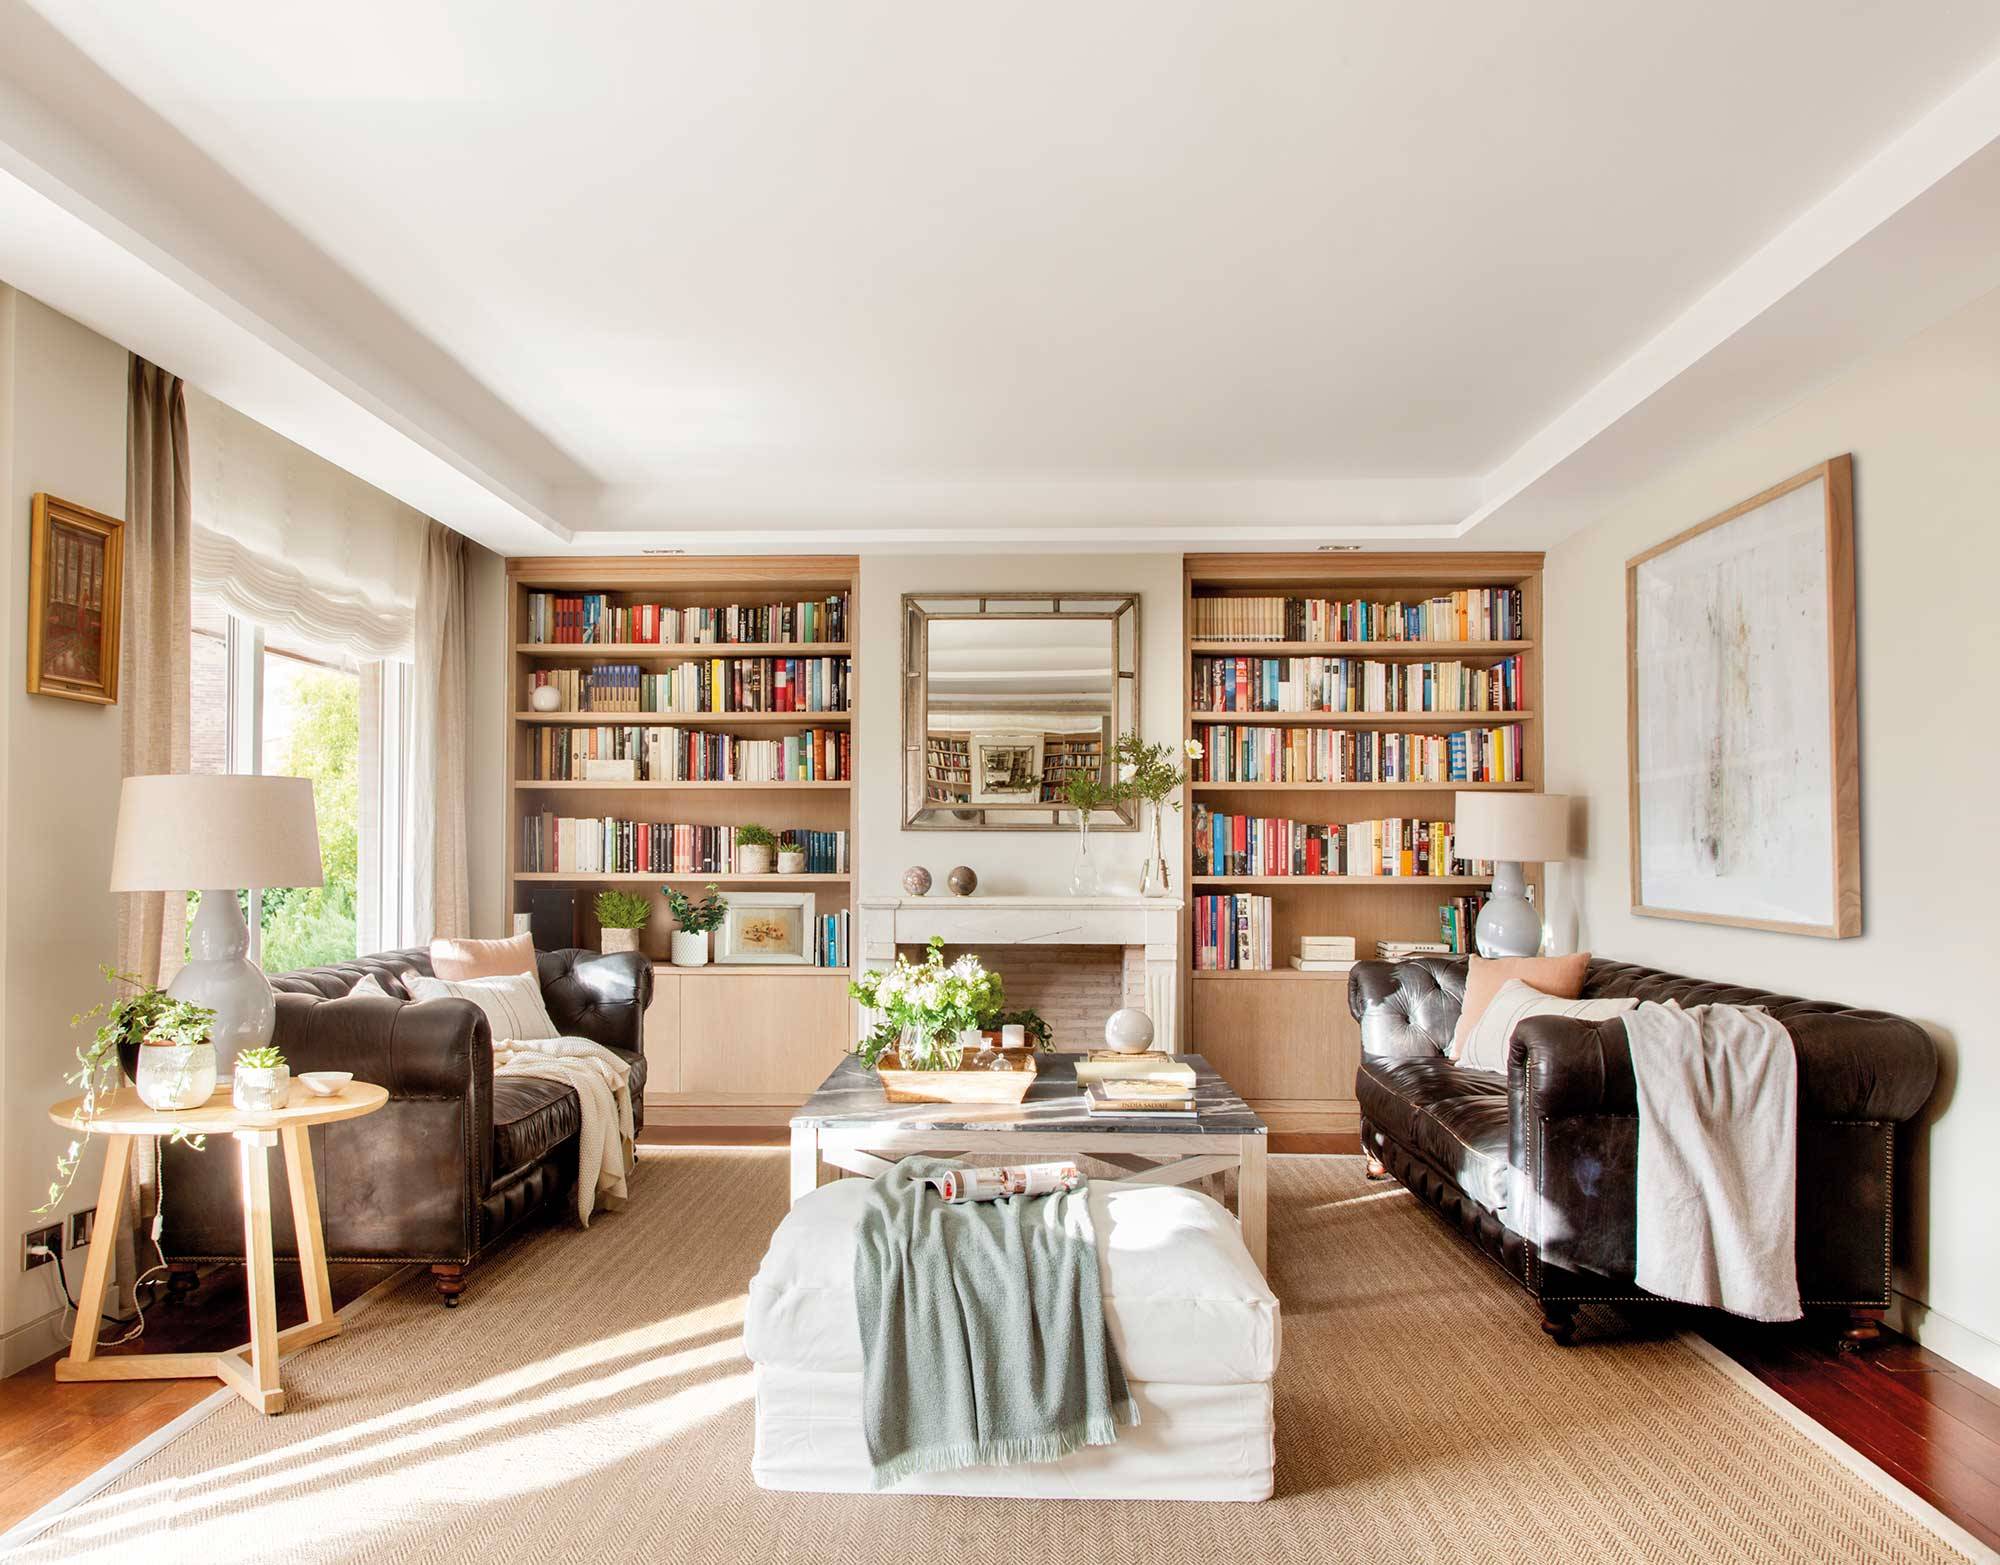 Salón con chimenea, sofás chéster enfrentados y dos librerías simétricas.